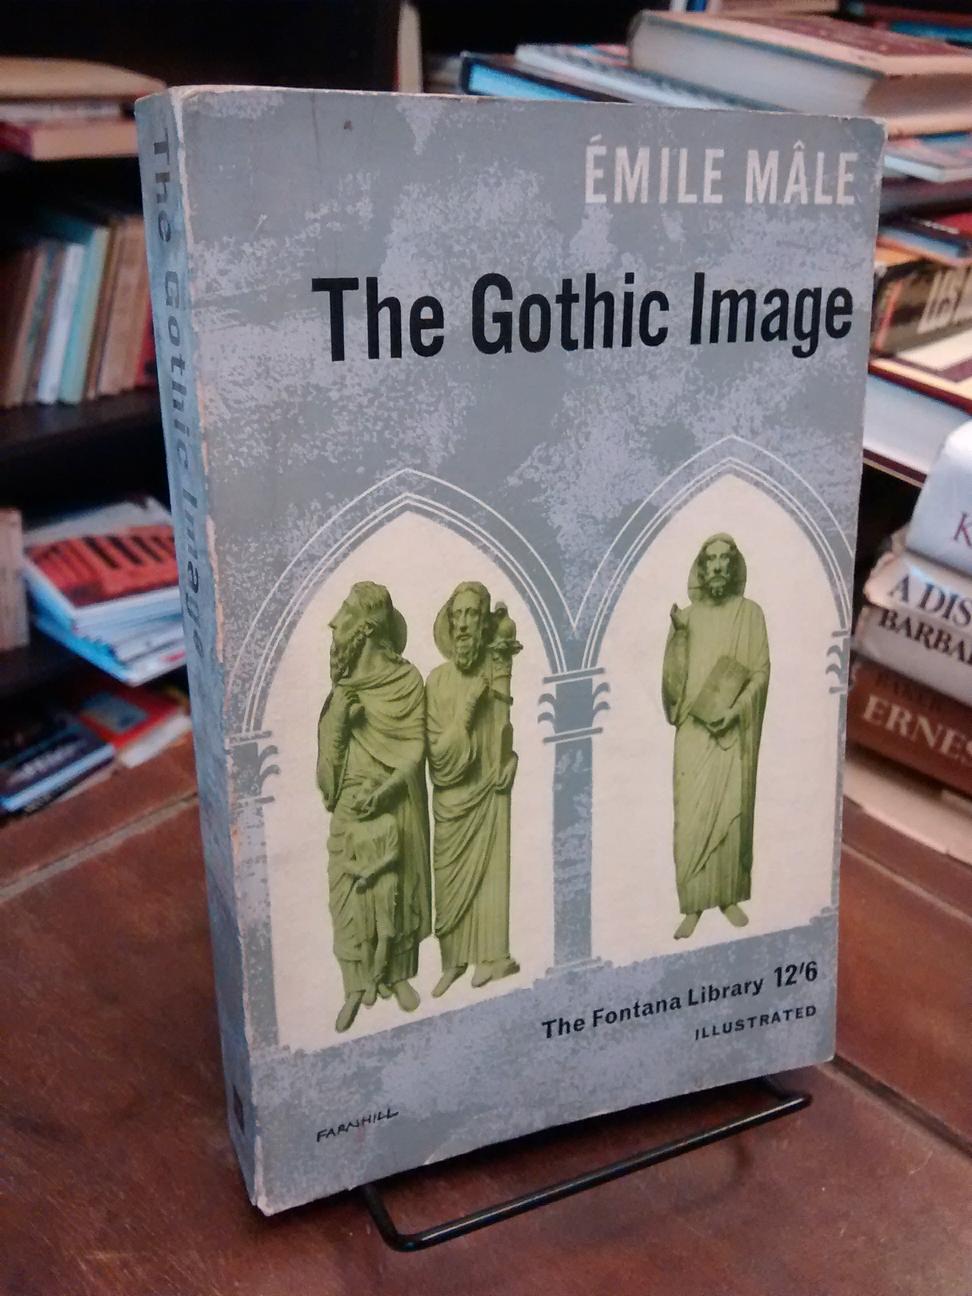 The Gothic Image - Émile Mâle